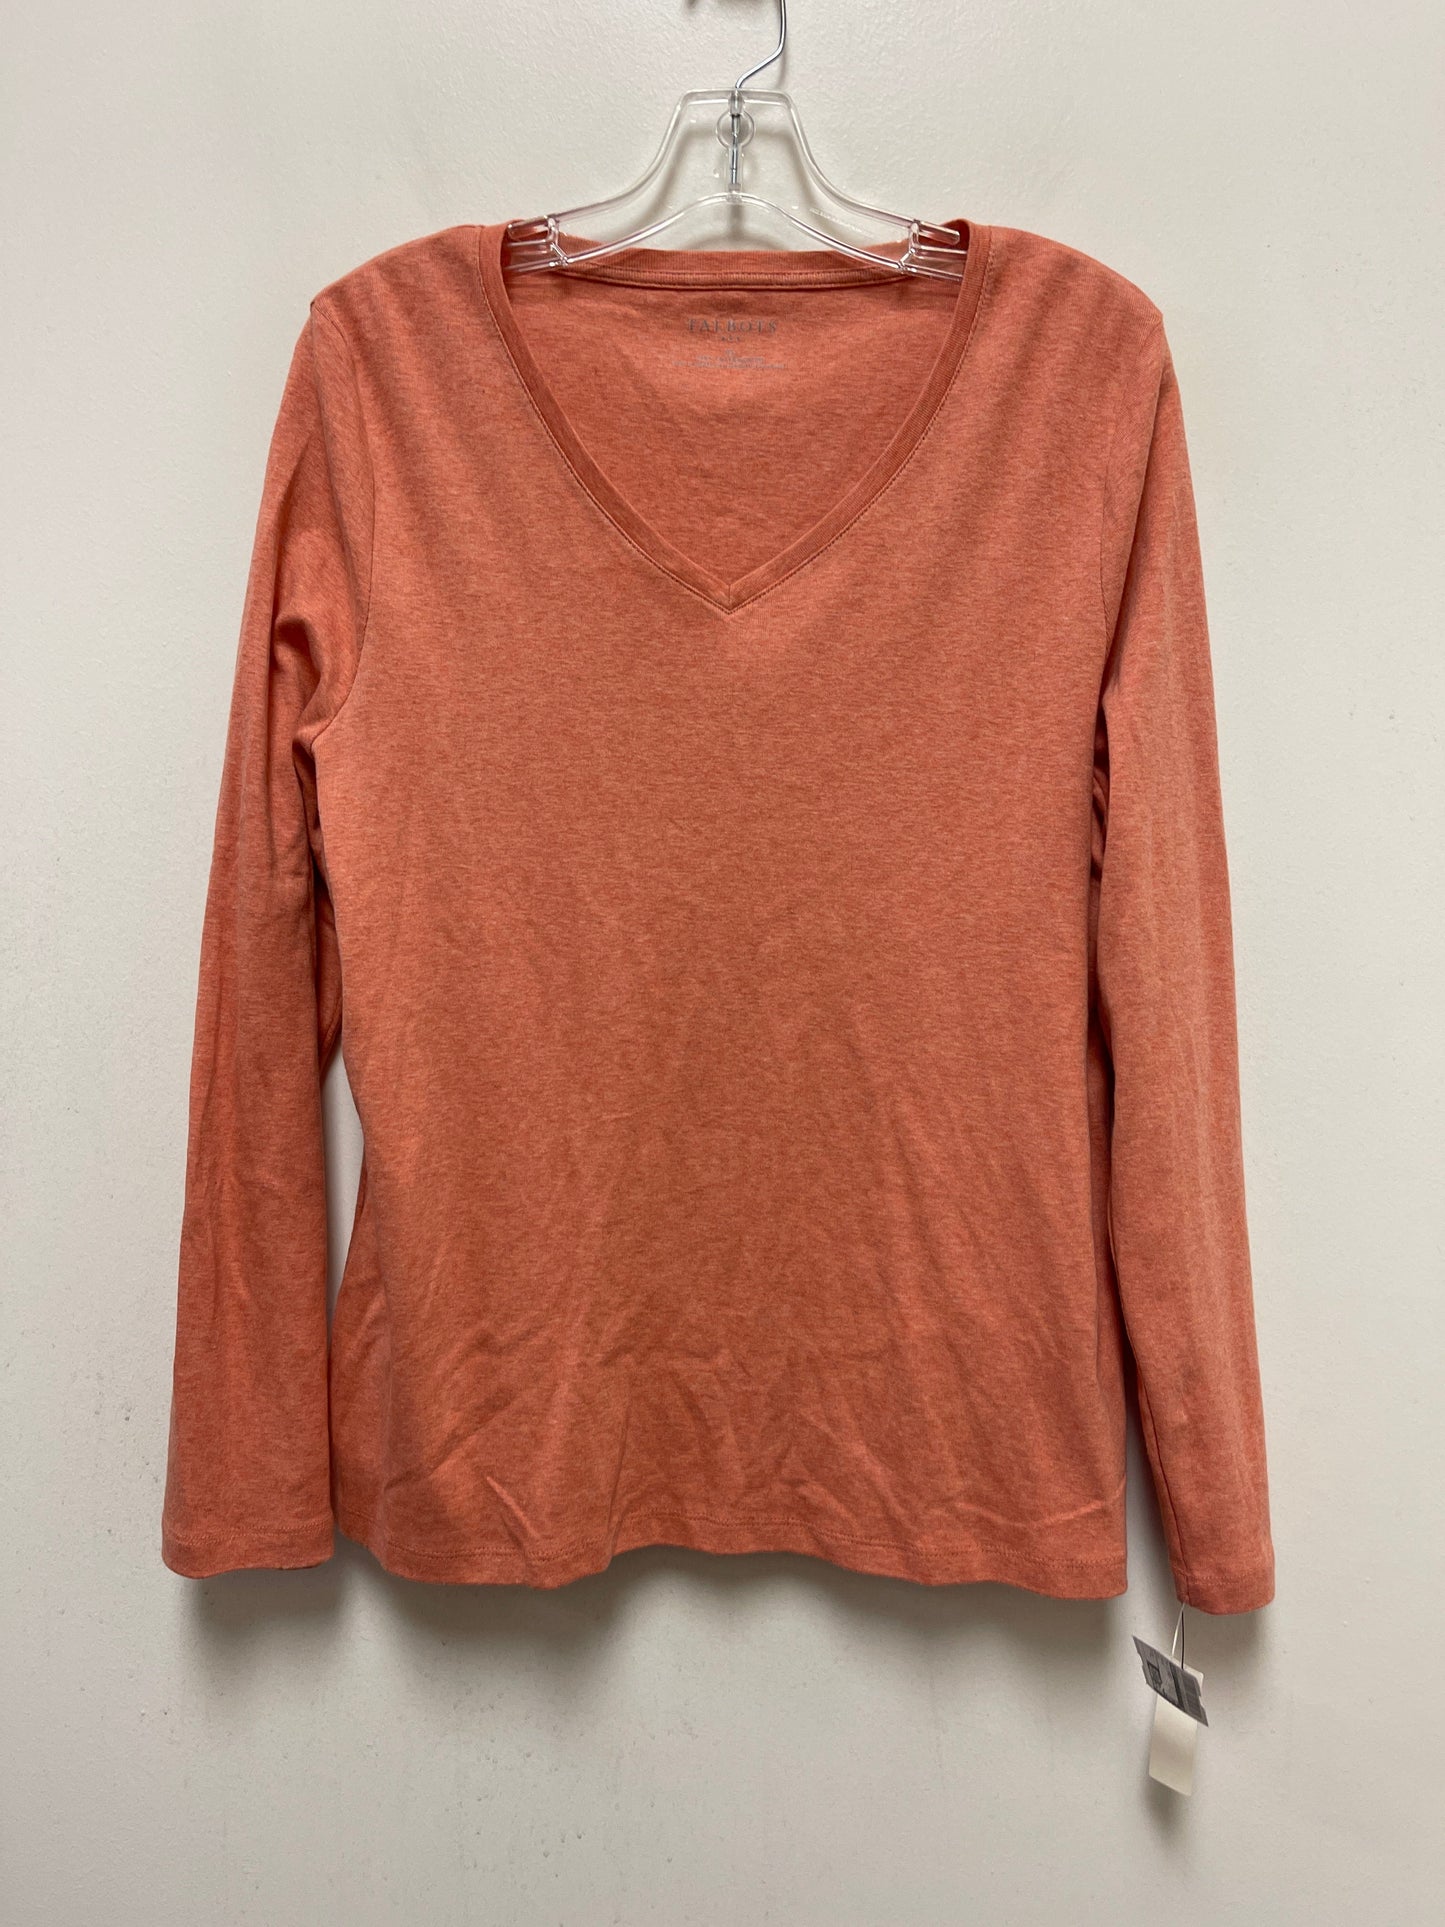 Orange Top Long Sleeve Basic Talbots, Size Xl